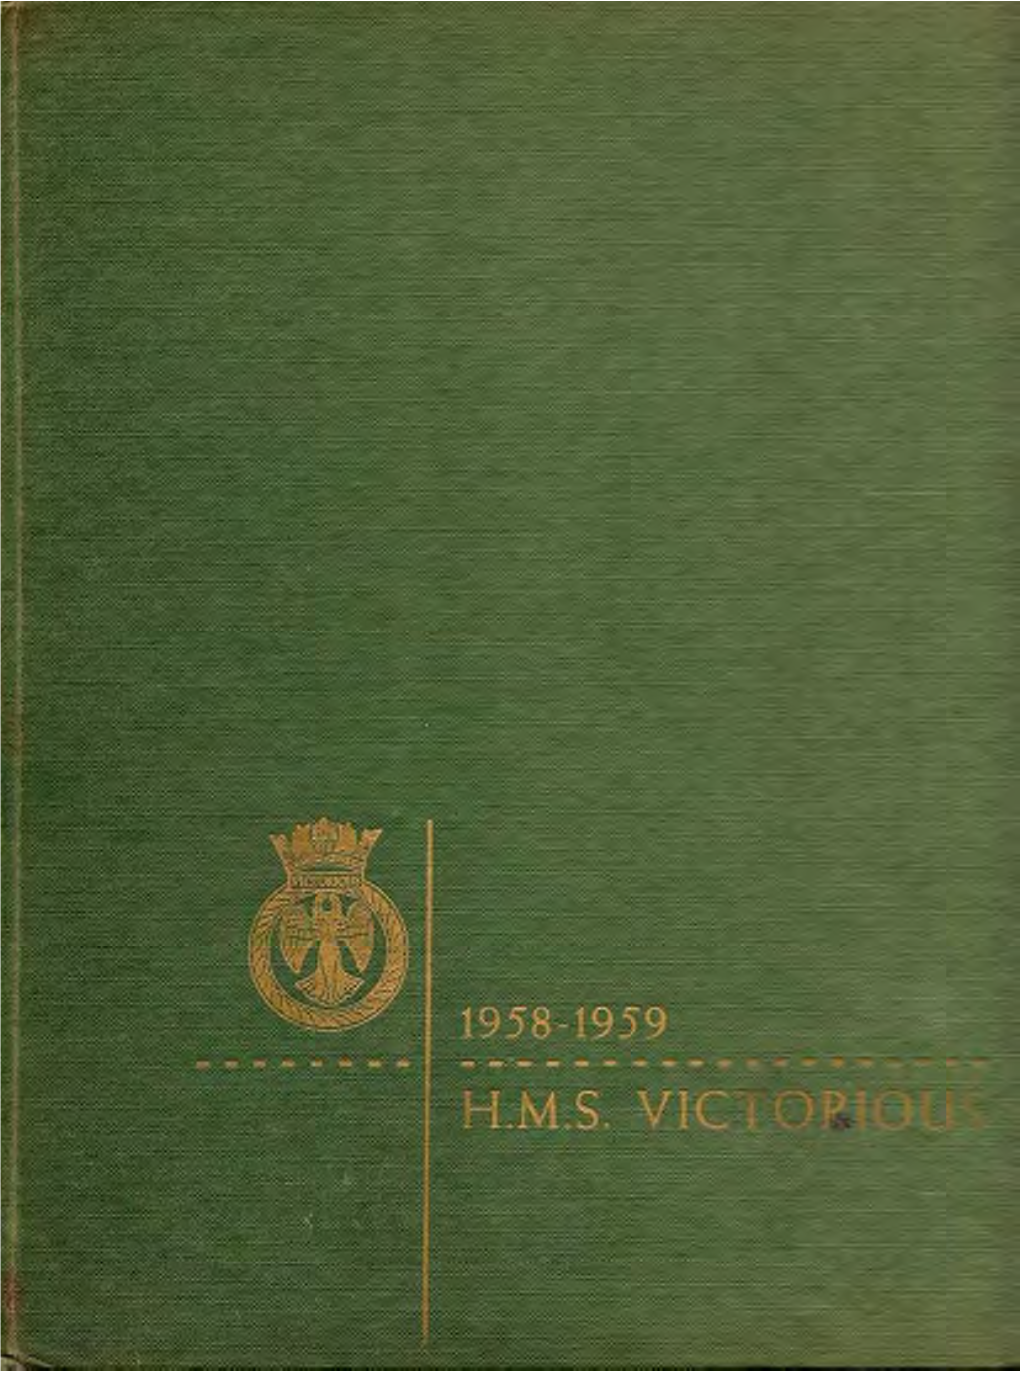 Hms Victorious 1958-1959